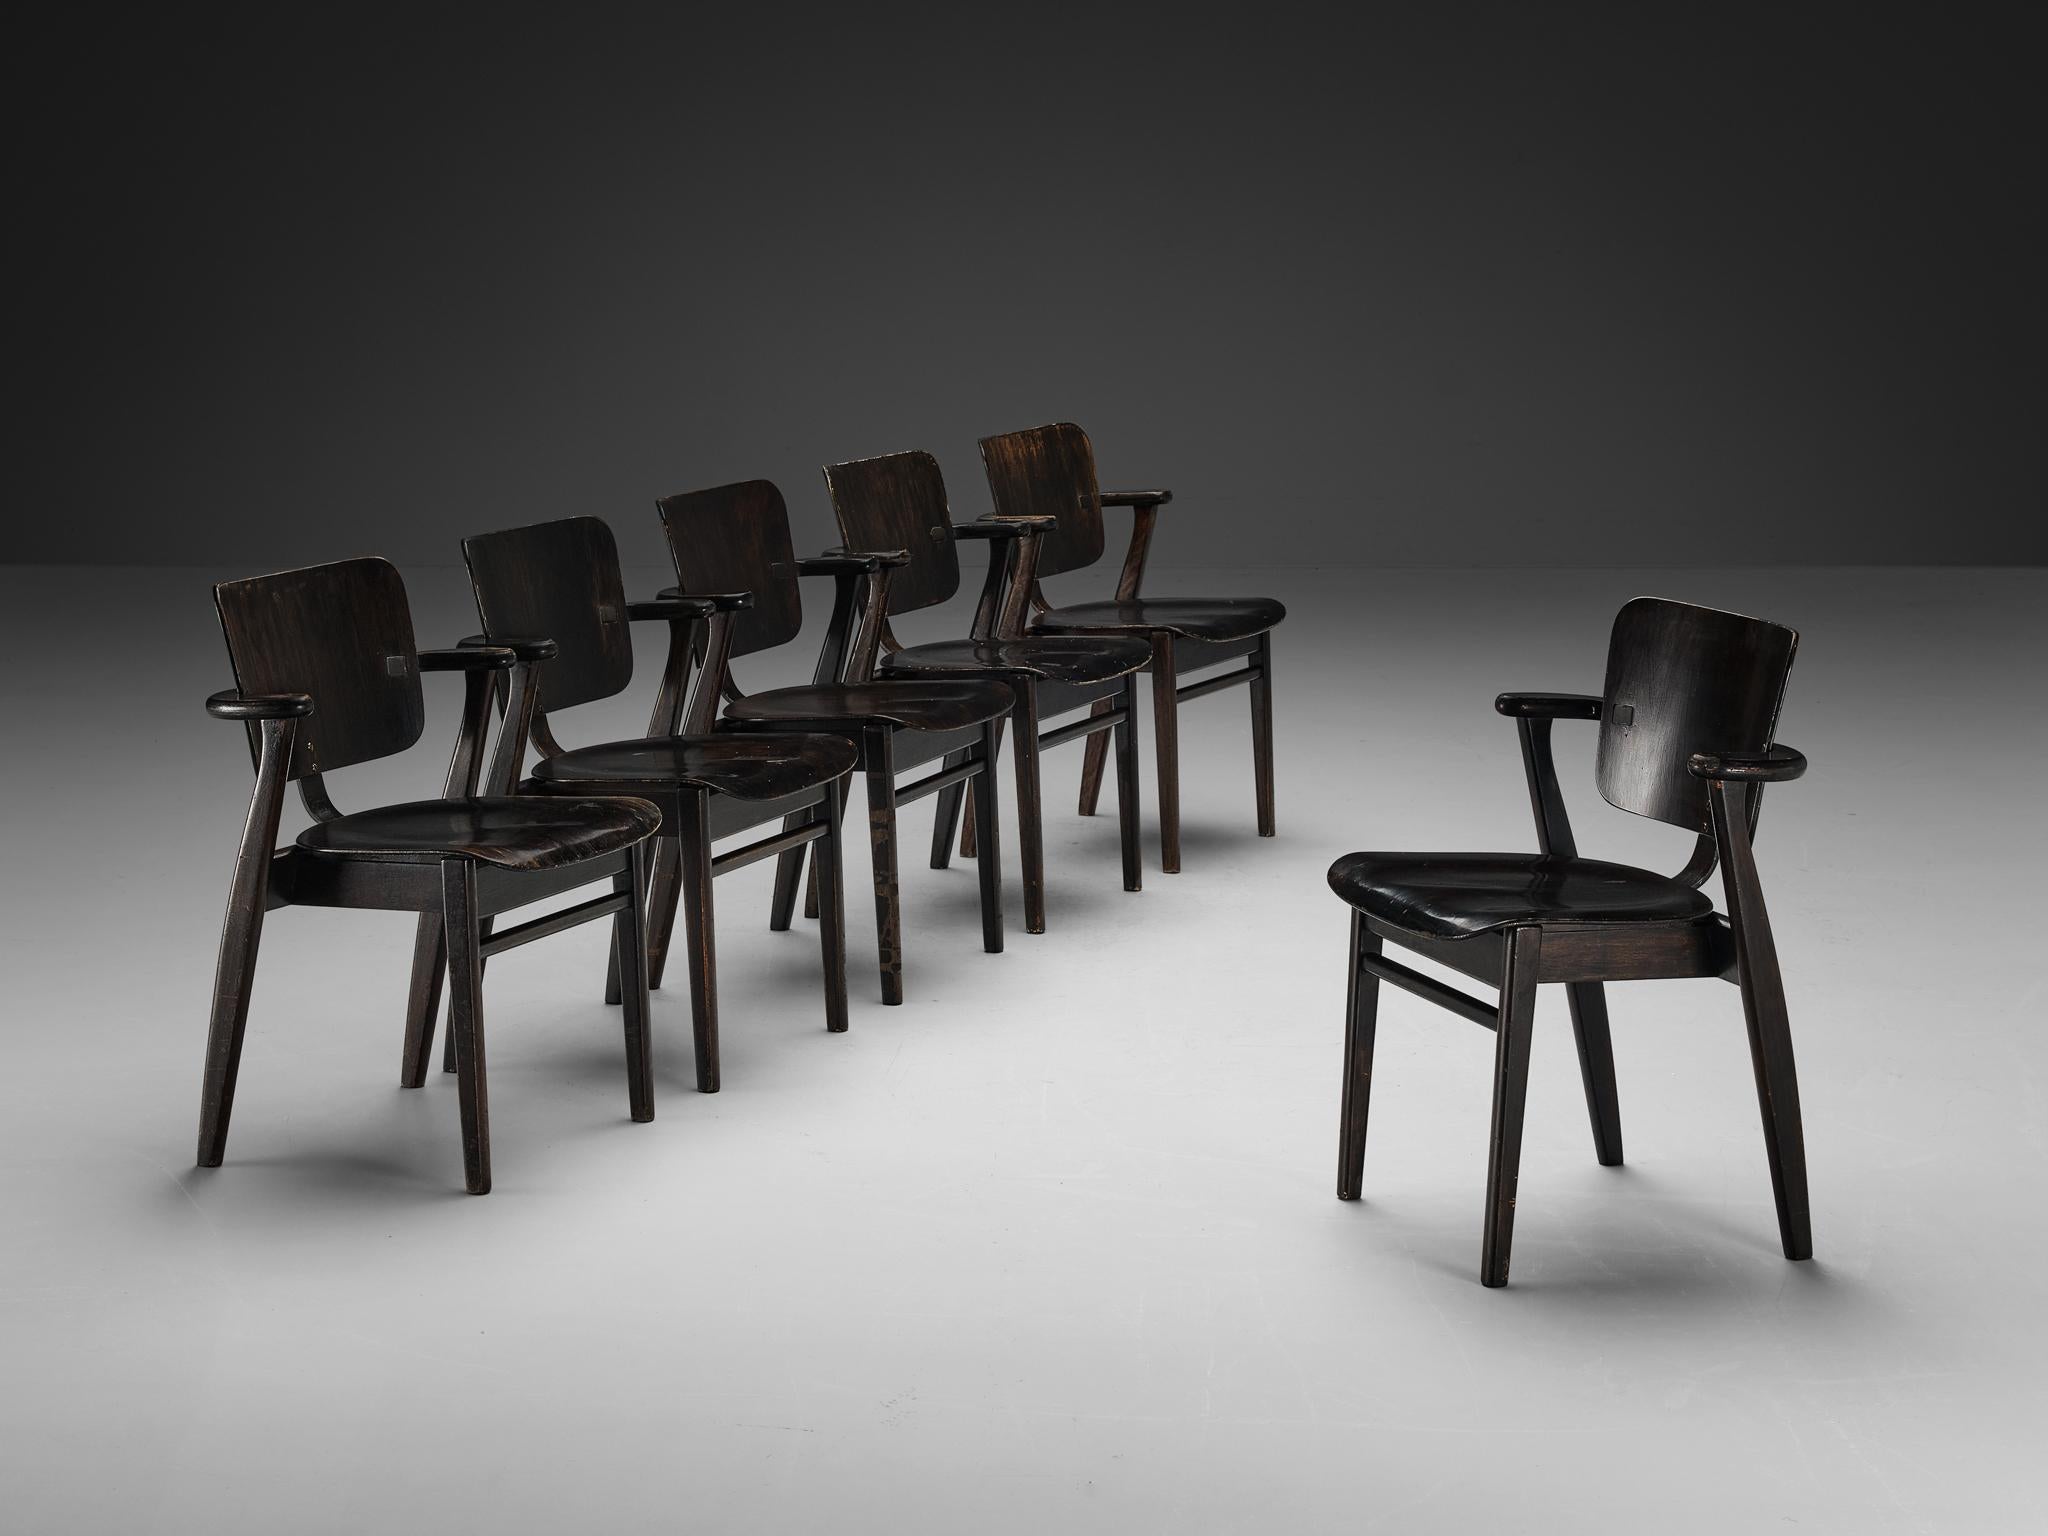 Ilmari Tapiovaara, ensemble de six fauteuils, teck teinté, métal, Finlande, 1953

Il s'agit d'un magnifique ensemble de fauteuils Domus du designer finlandais Ilmari Tapiovaara. Exécuté dans une couleur noire, le cadre comprend du contreplaqué de